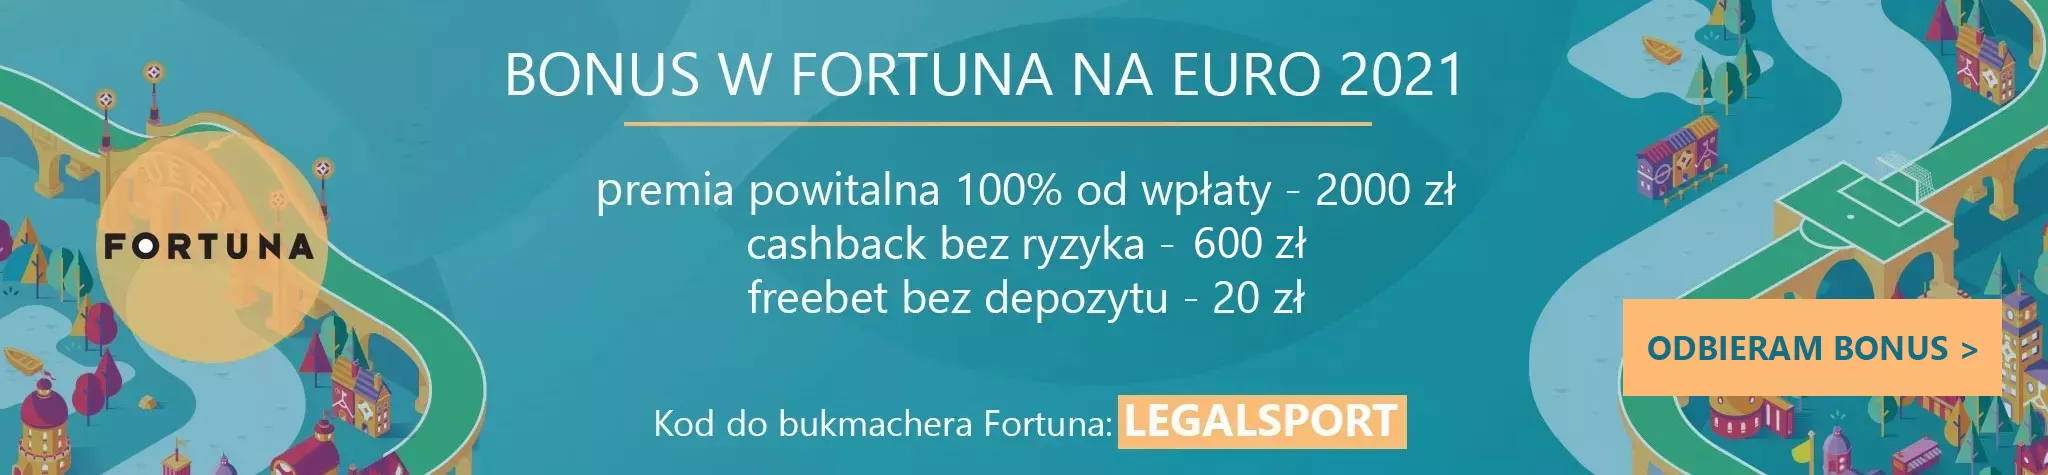 Bonus Fortuny na Euro 2021 - wersja promocyjna z kodem afiliacyjnym, który zapewnia max. benefity